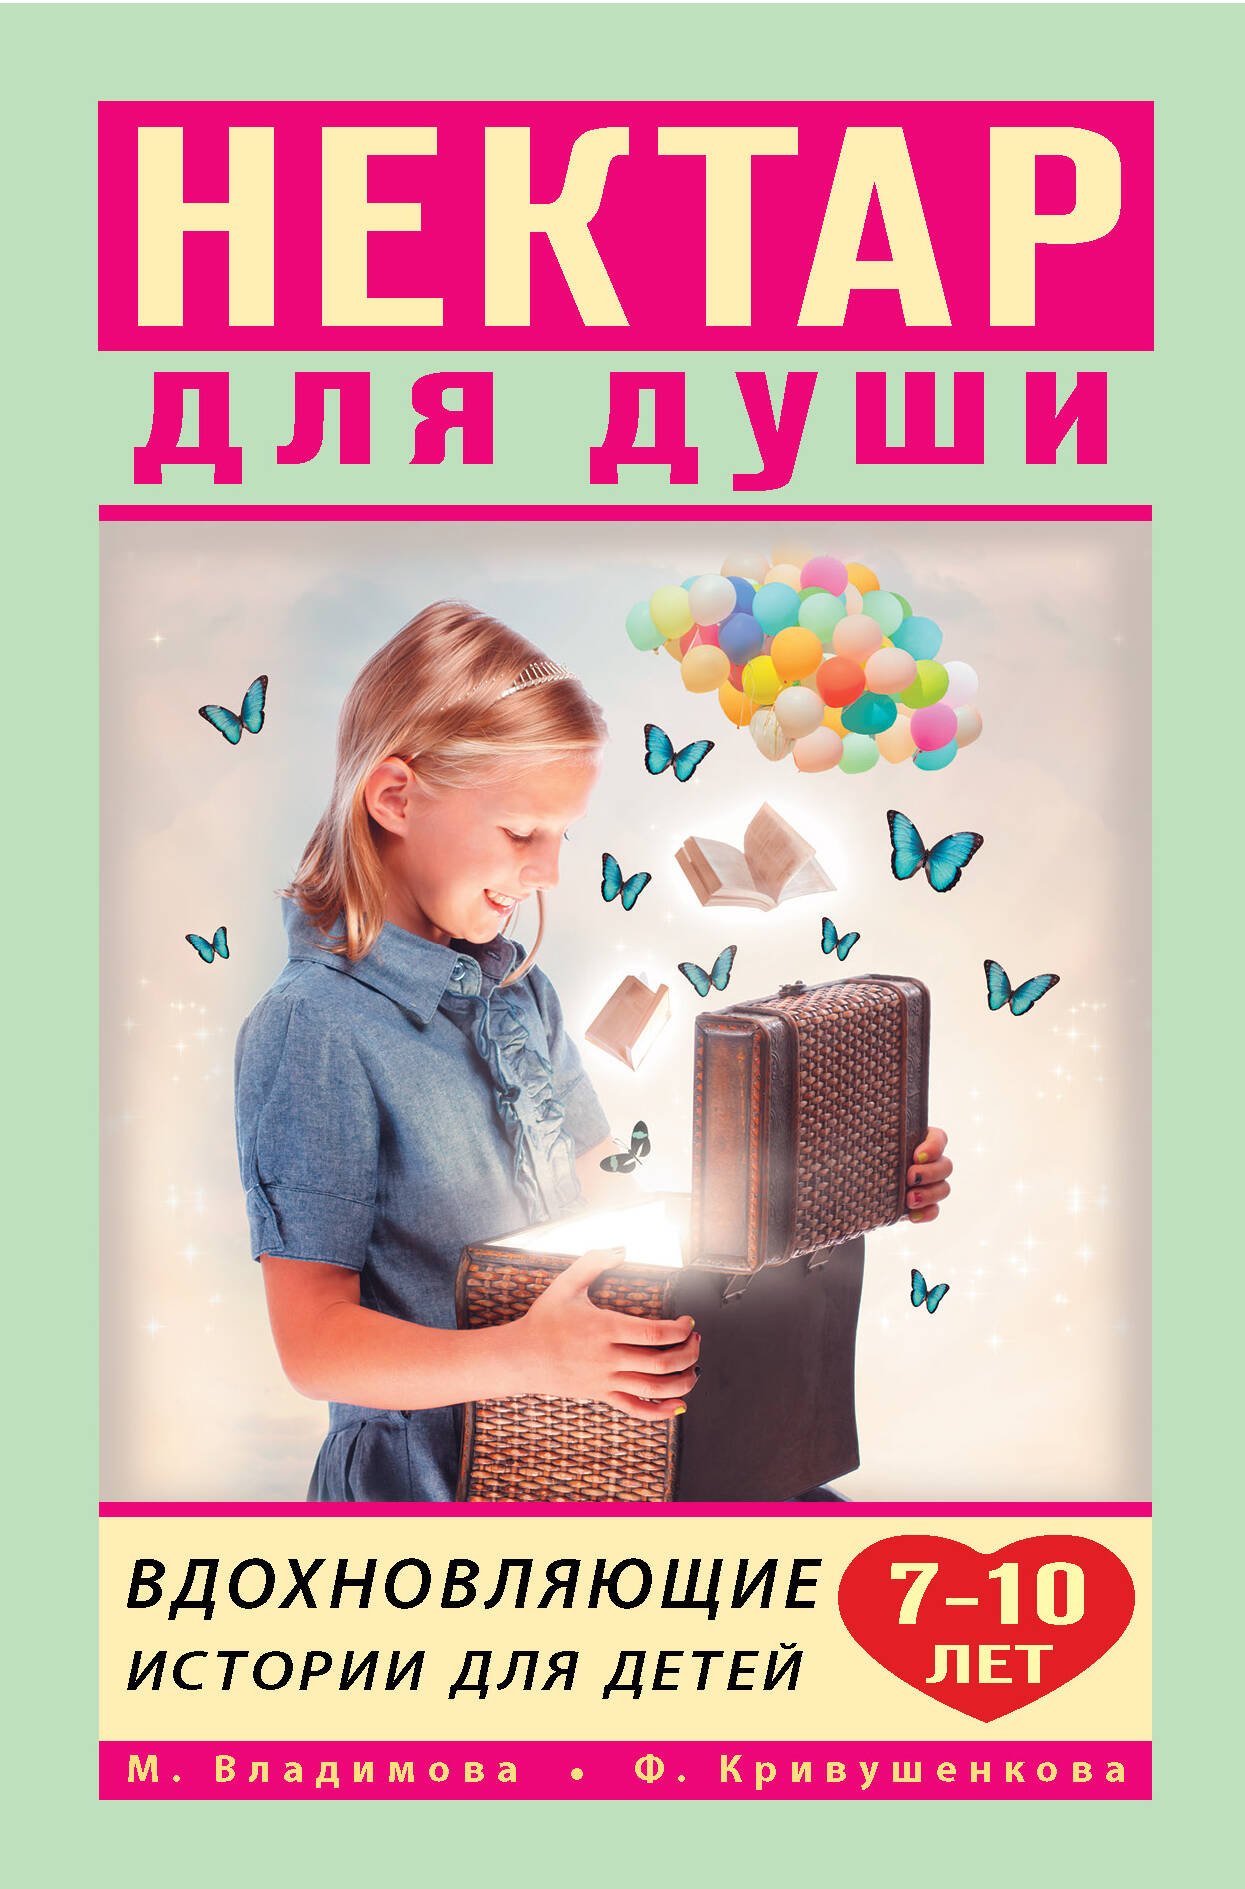 Владимова Марина Г. Вдохновляющие истории для детей 7-10 лет - страница 0